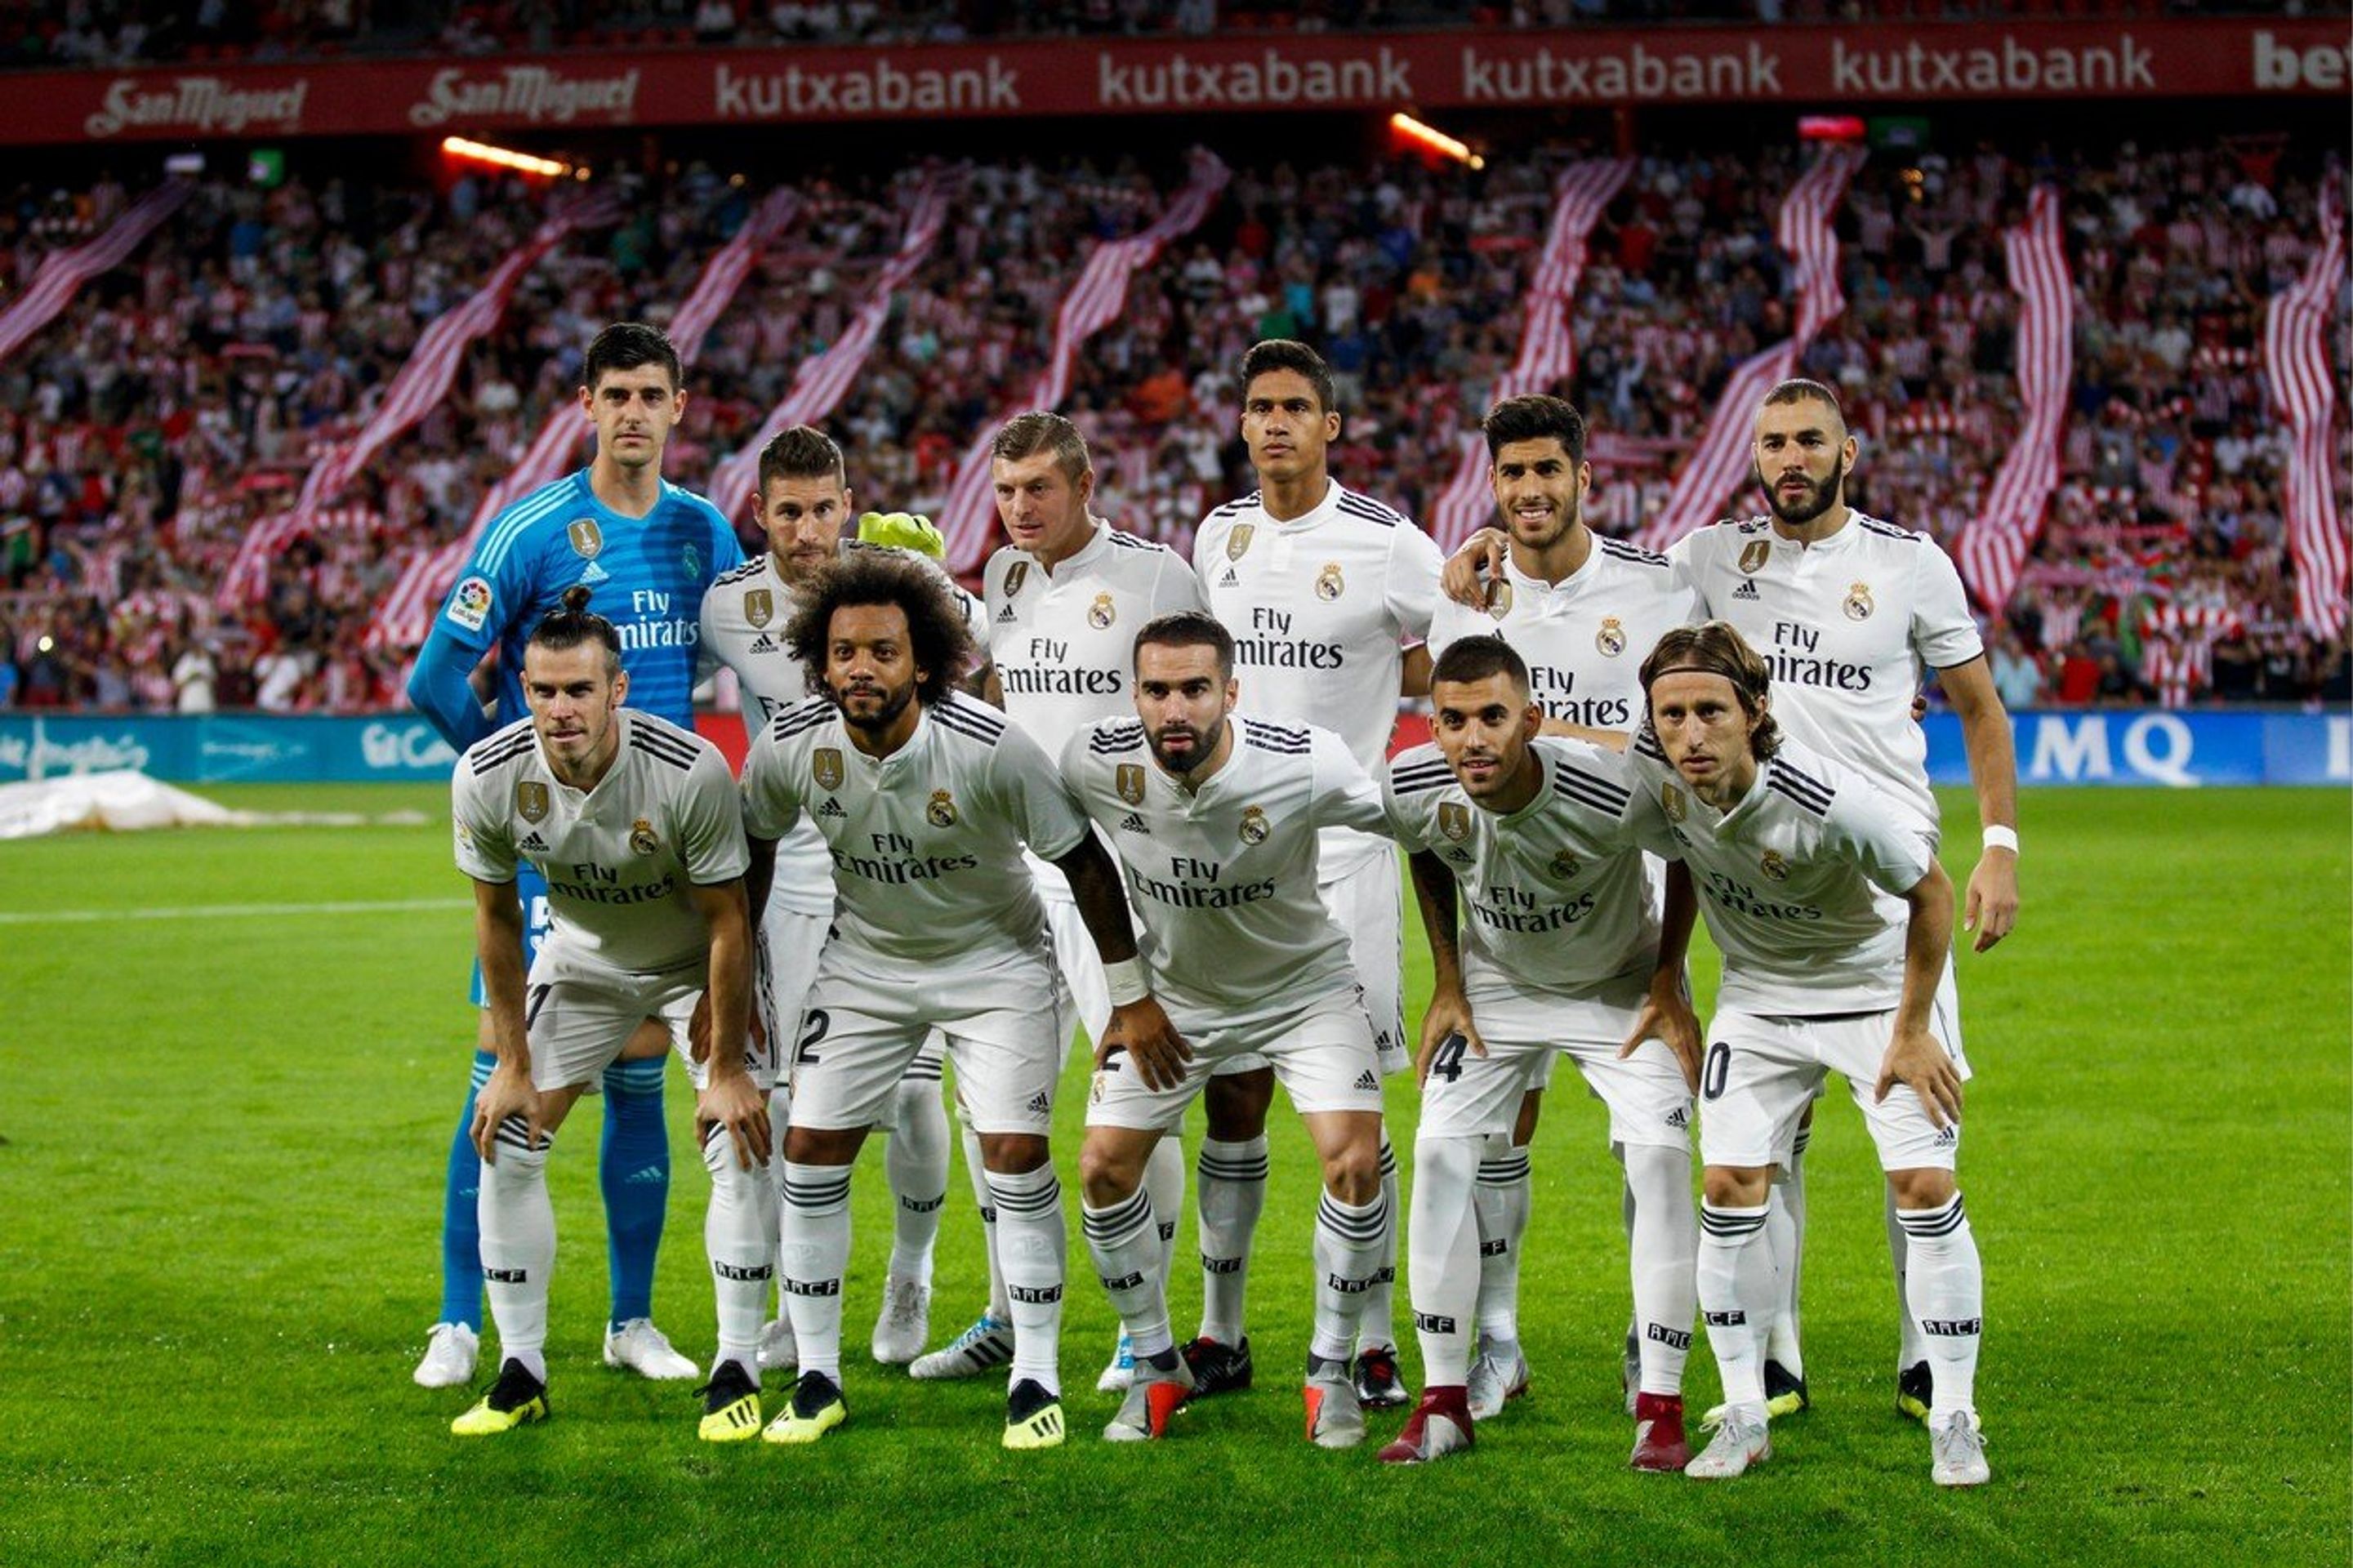 Real Madrid - GALERIE: Přehled hodnot týmů hrající letošní ročník Ligy mistrů (4/4)